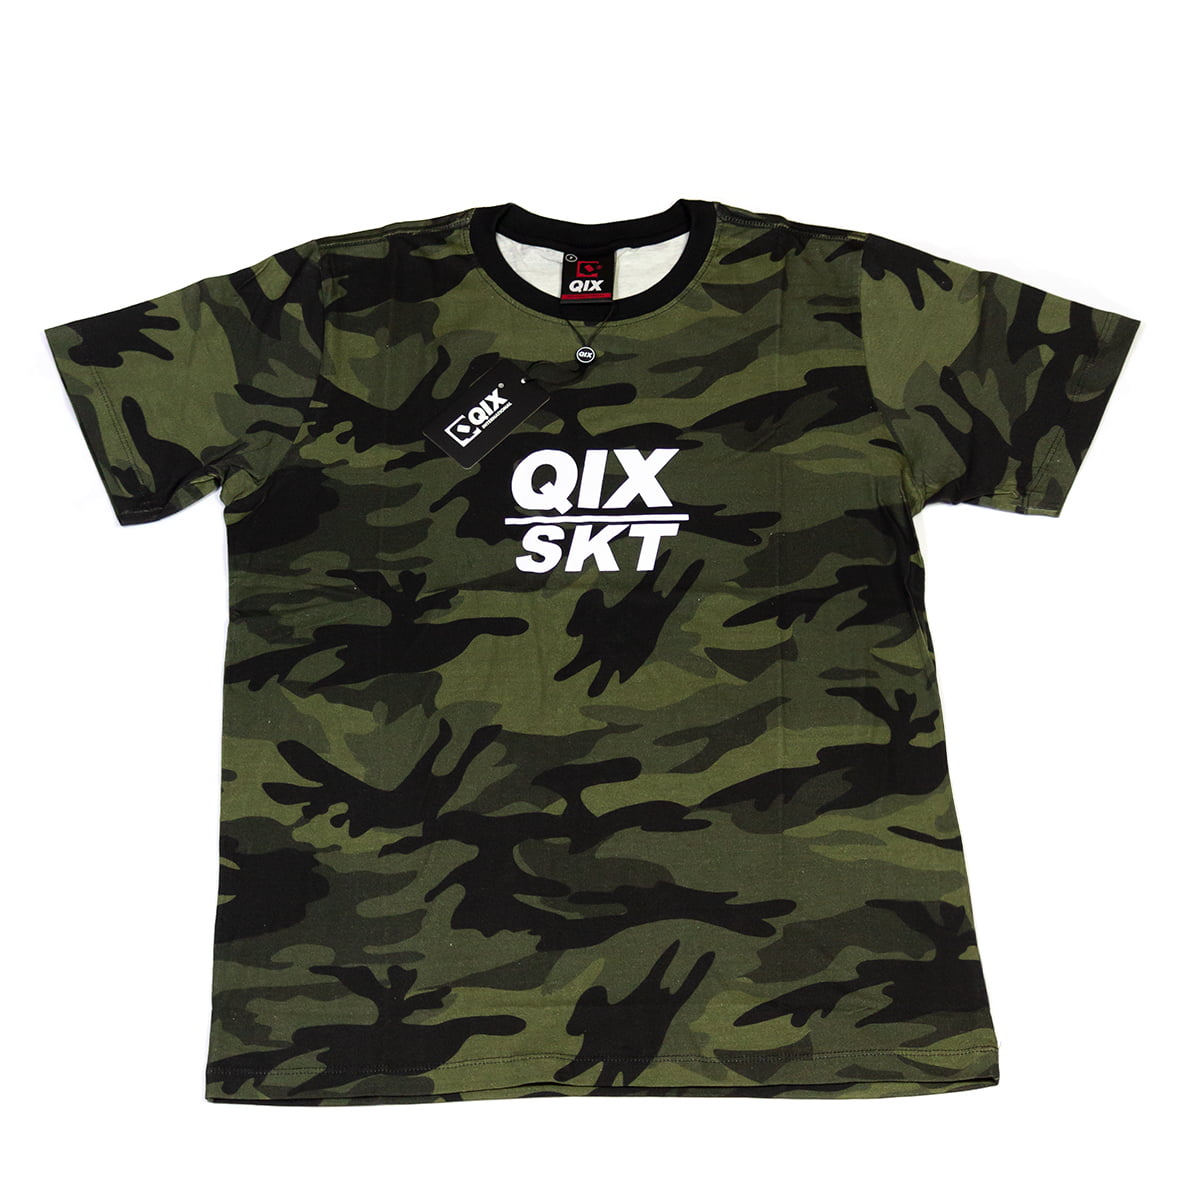 Camiseta Print Qix/Skt Camuflada